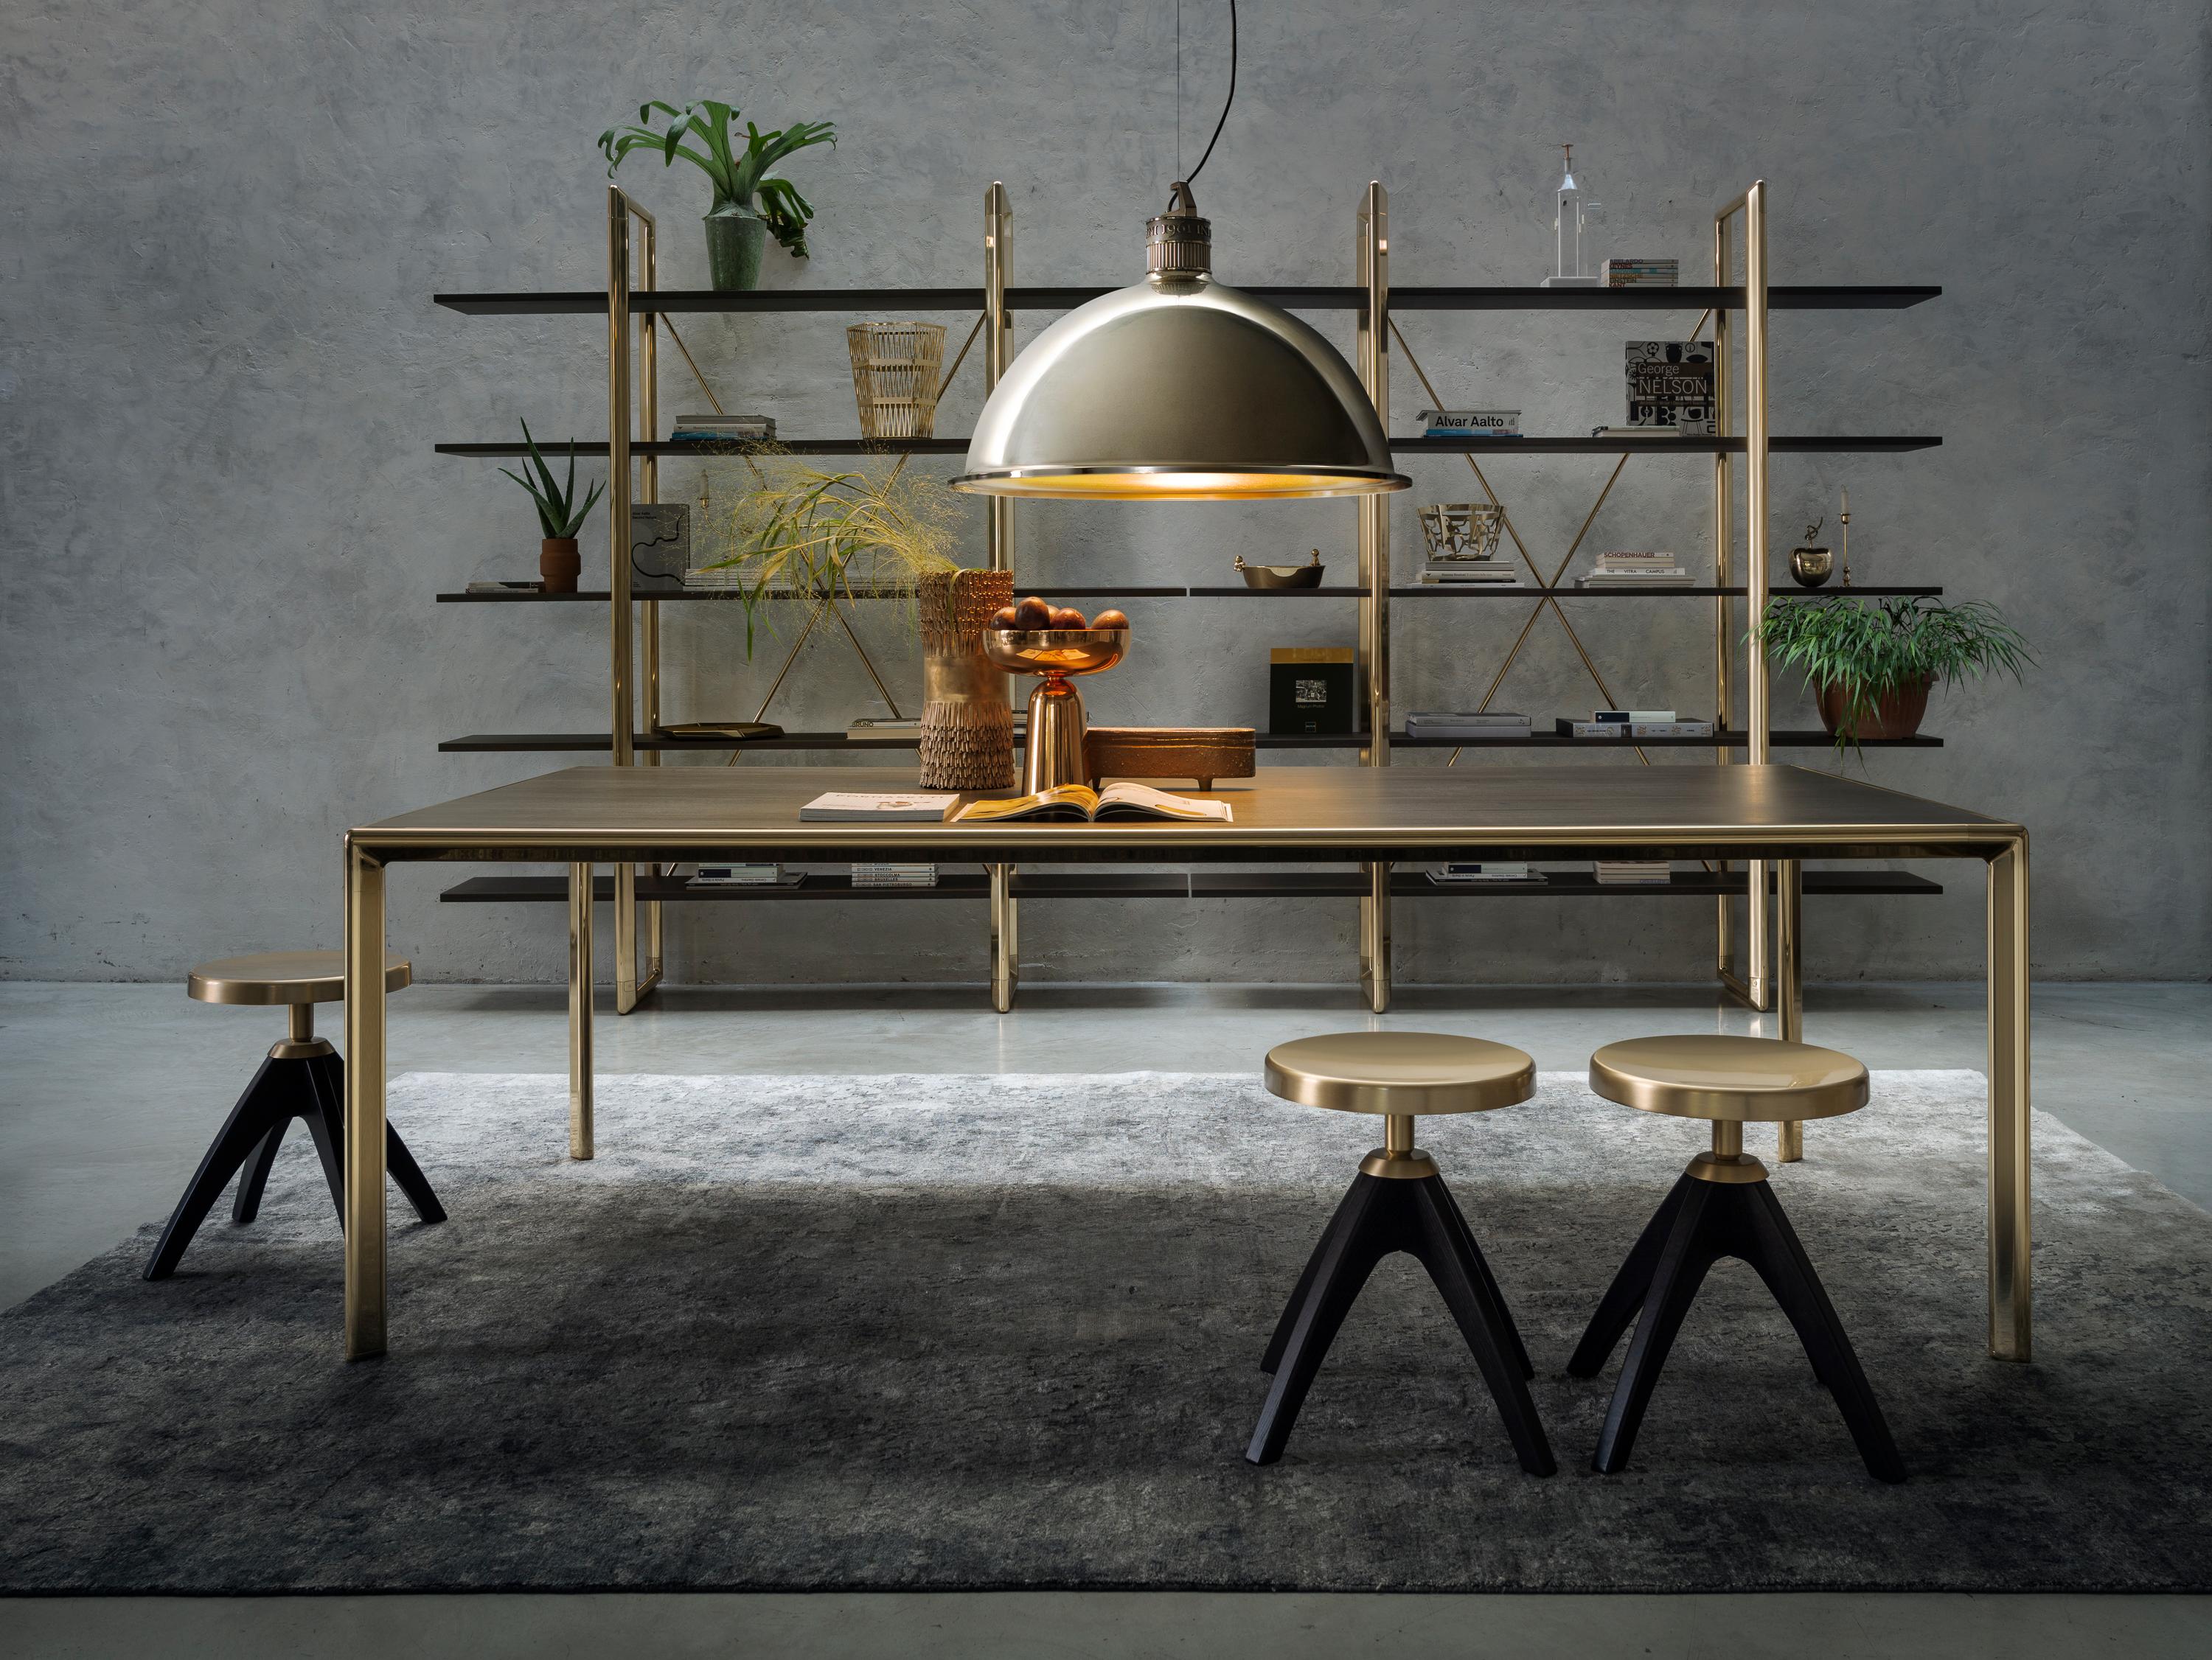 Stefano Giovannoni conçoit Frame pour Ghidini1961, une nouvelle collection composée de canapés, fauteuils, tables à manger et tables basses, bibliothèques et armoires. Tout part d'un élément simple : 